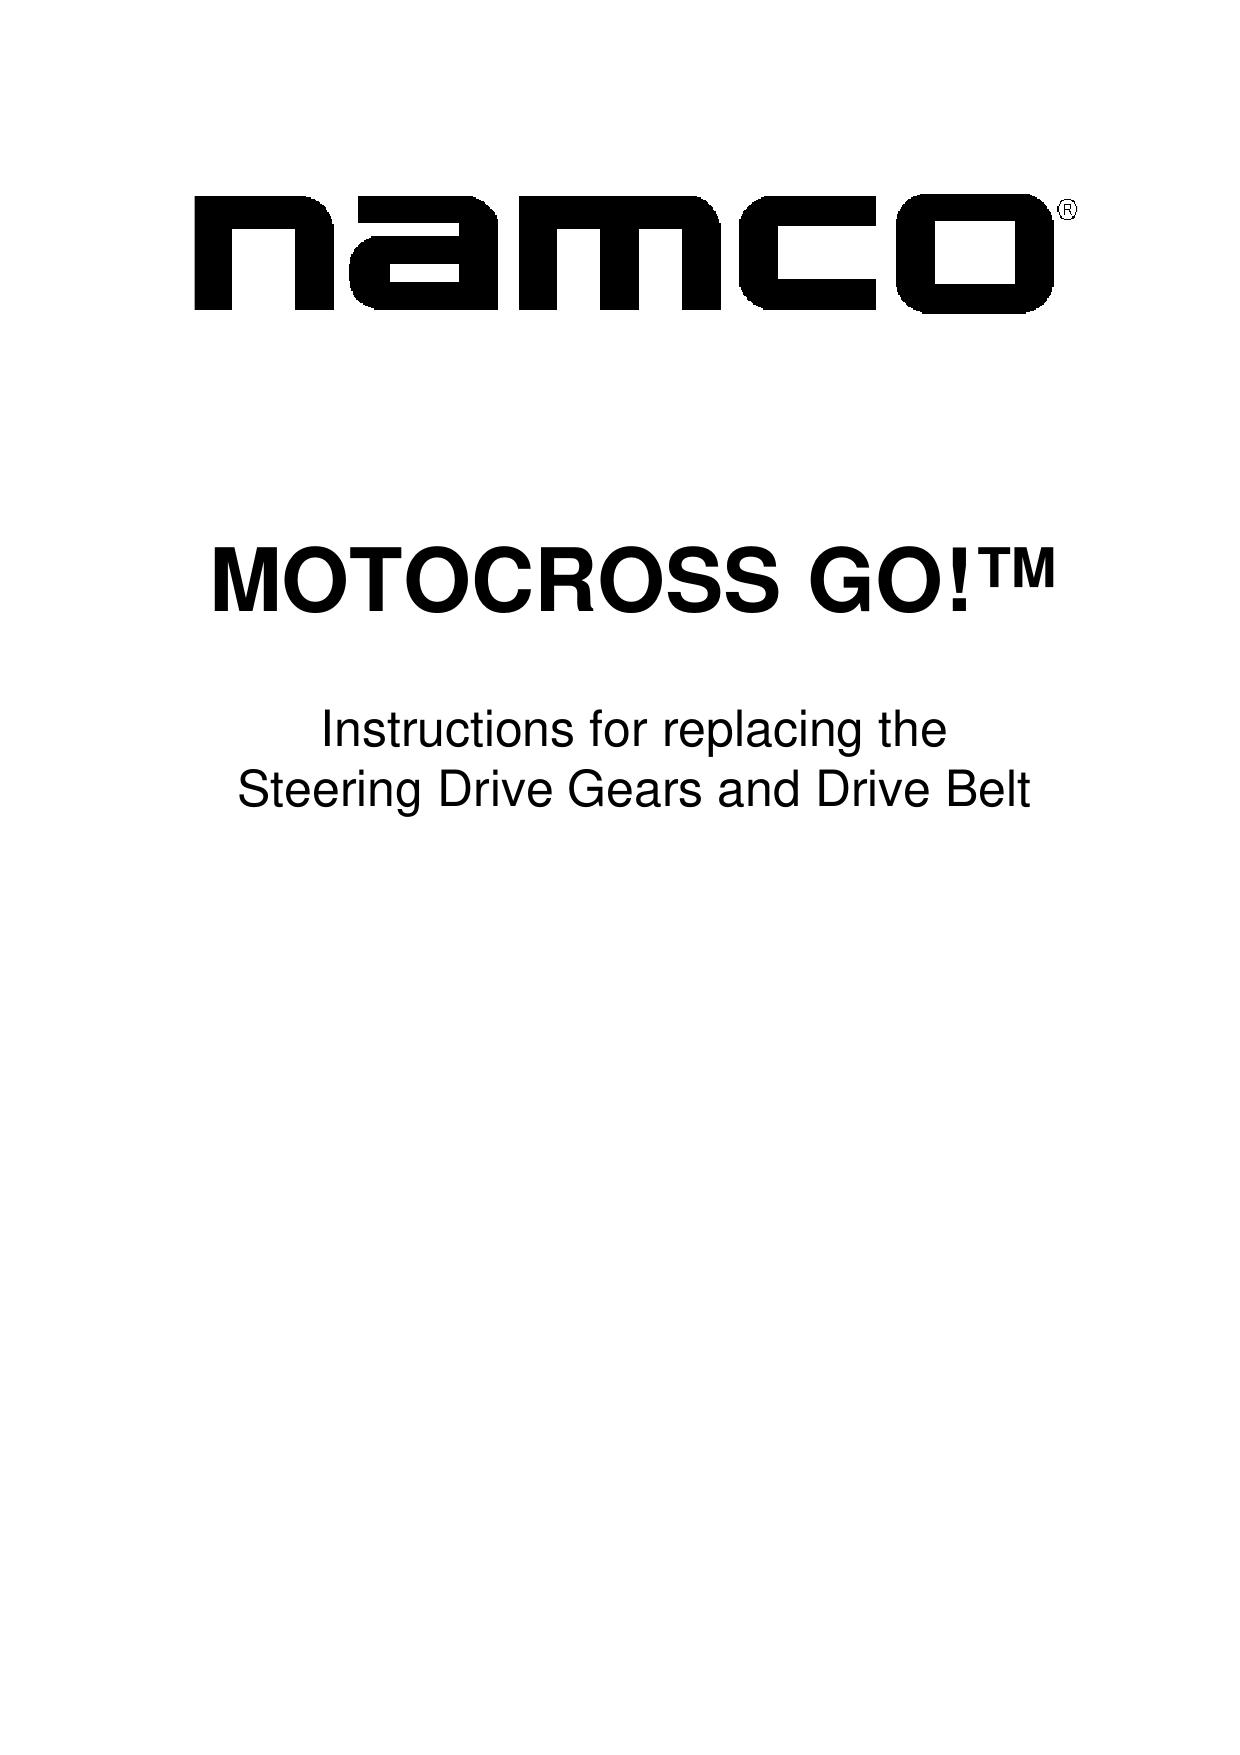 MotorCross Go DX Update 1